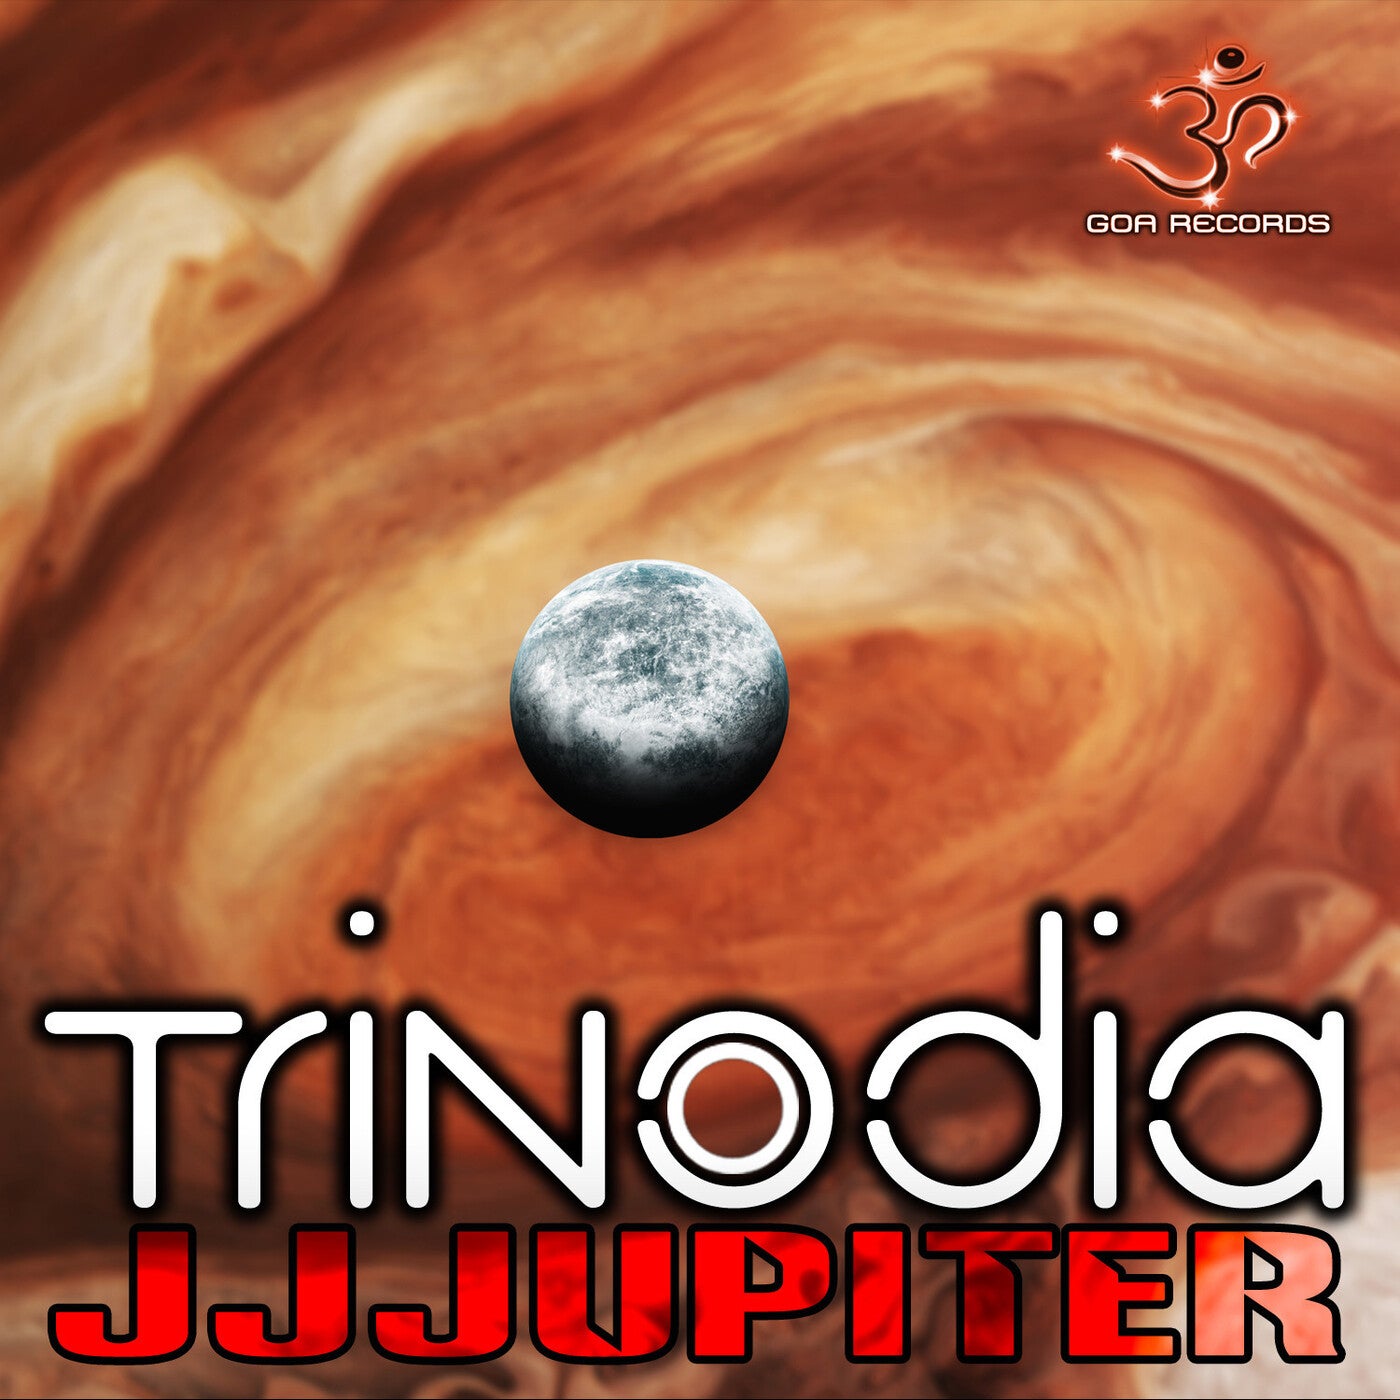 J J Jupiter